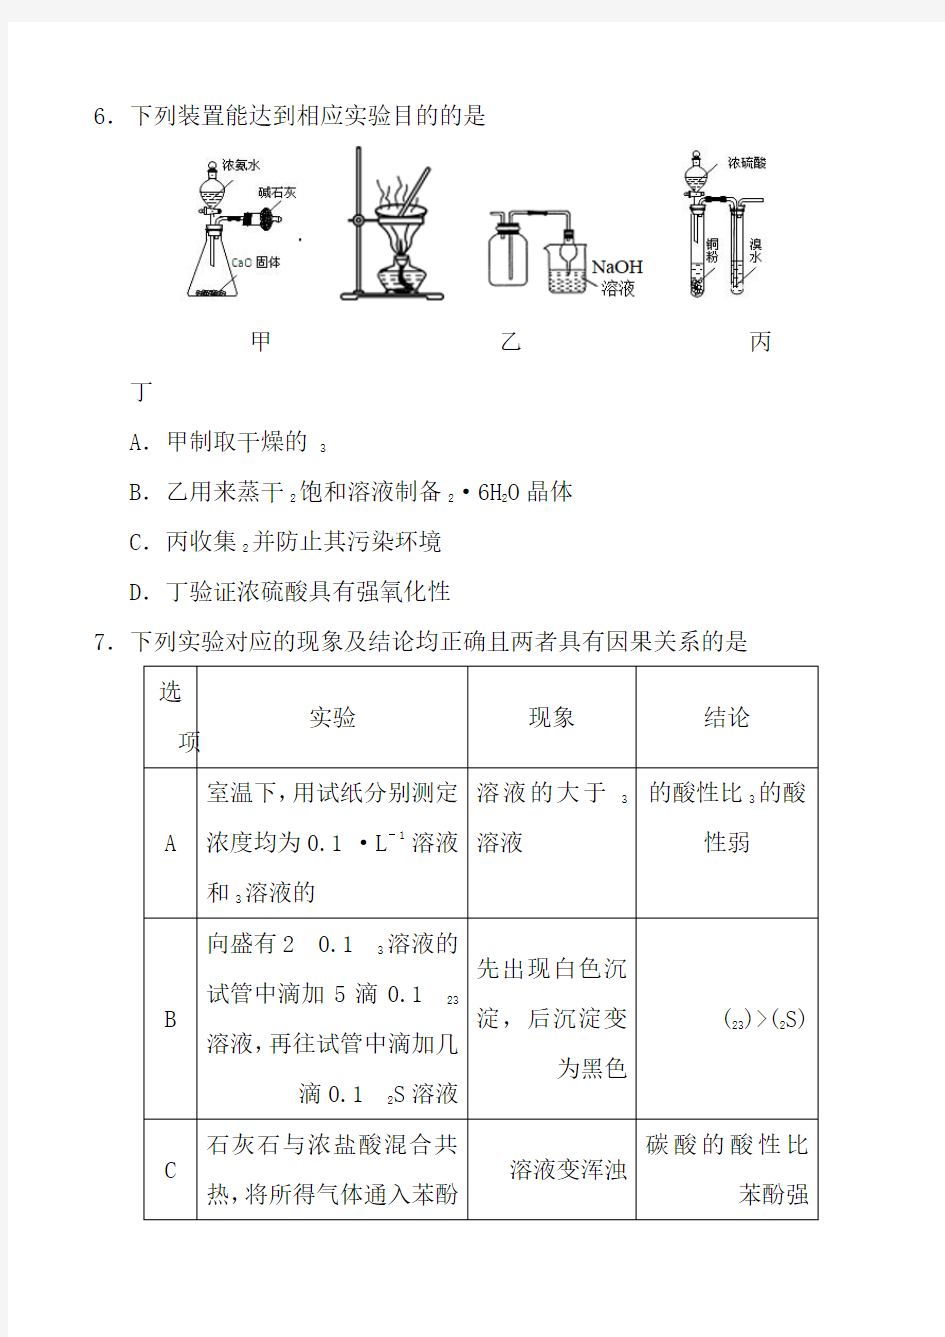 2018年辽宁省高中学生化学竞赛试题及答案